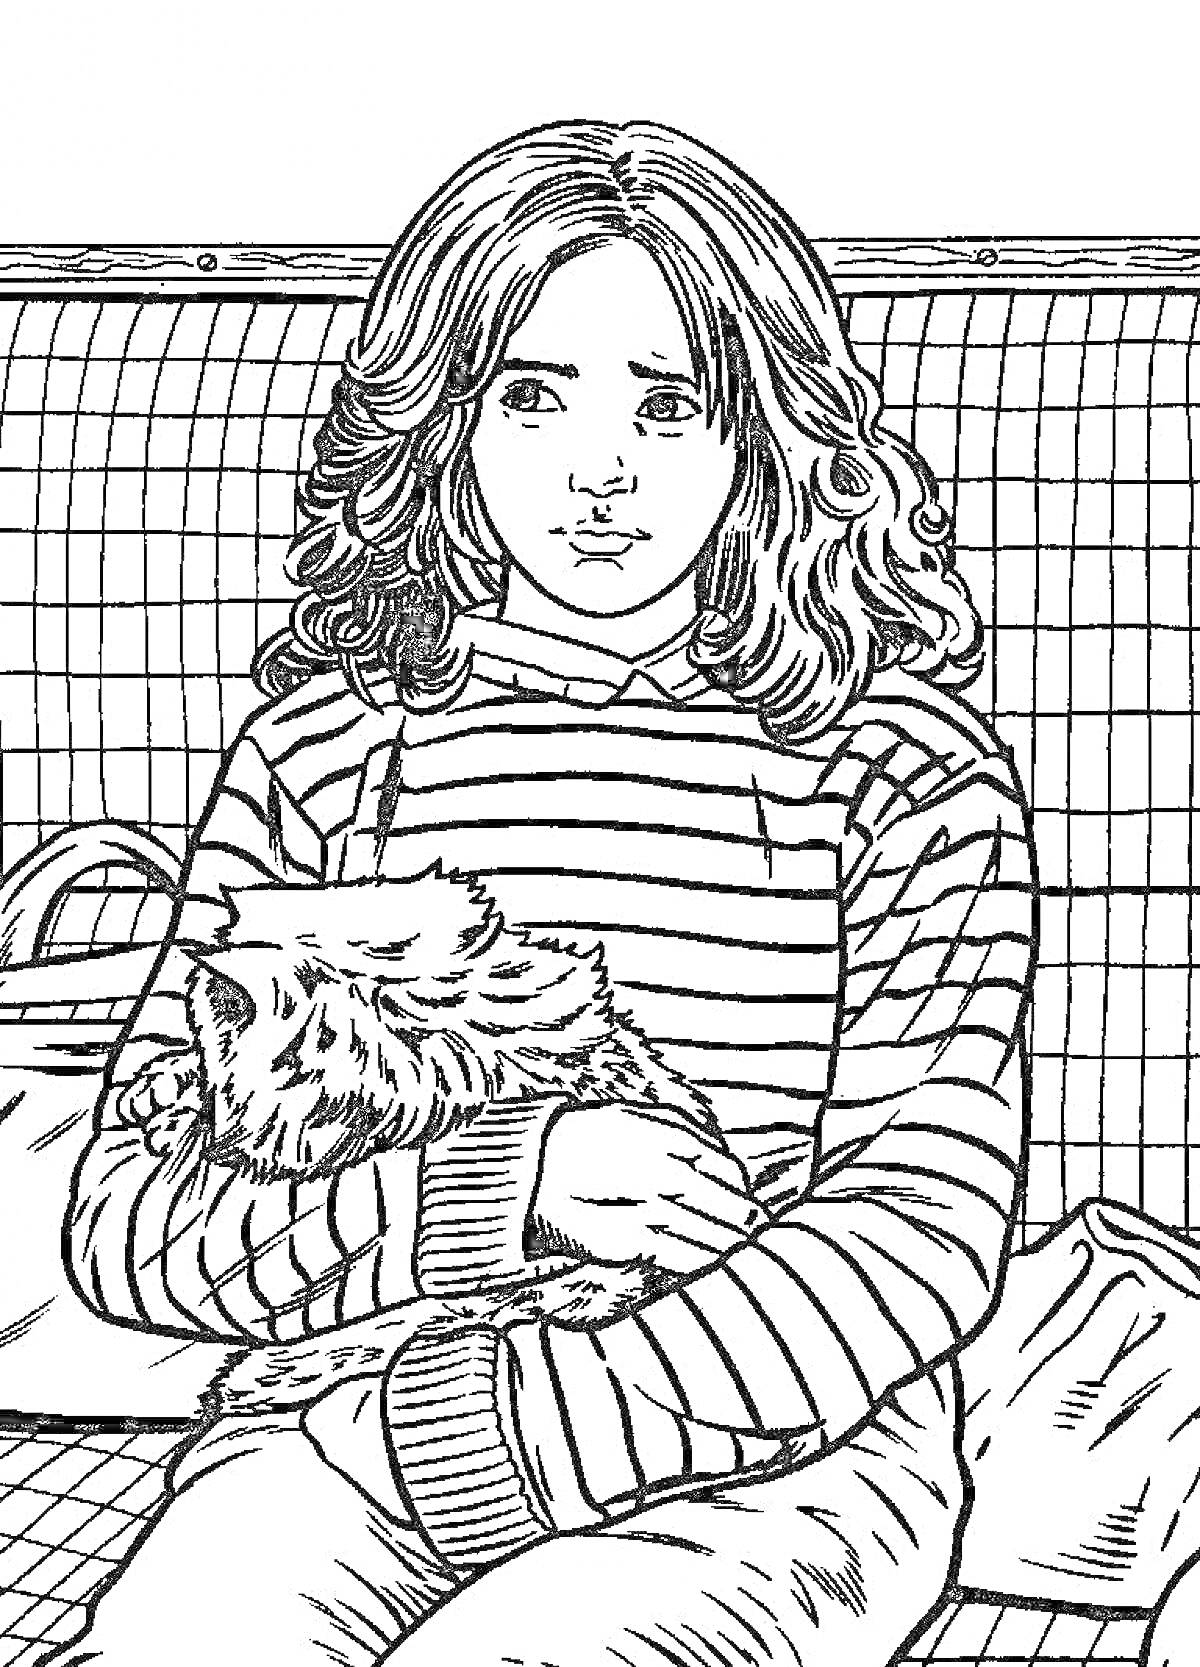 Раскраска Девочка с длинными волосами в полосатом свитере, держащая пушистого кота, на фоне клетки